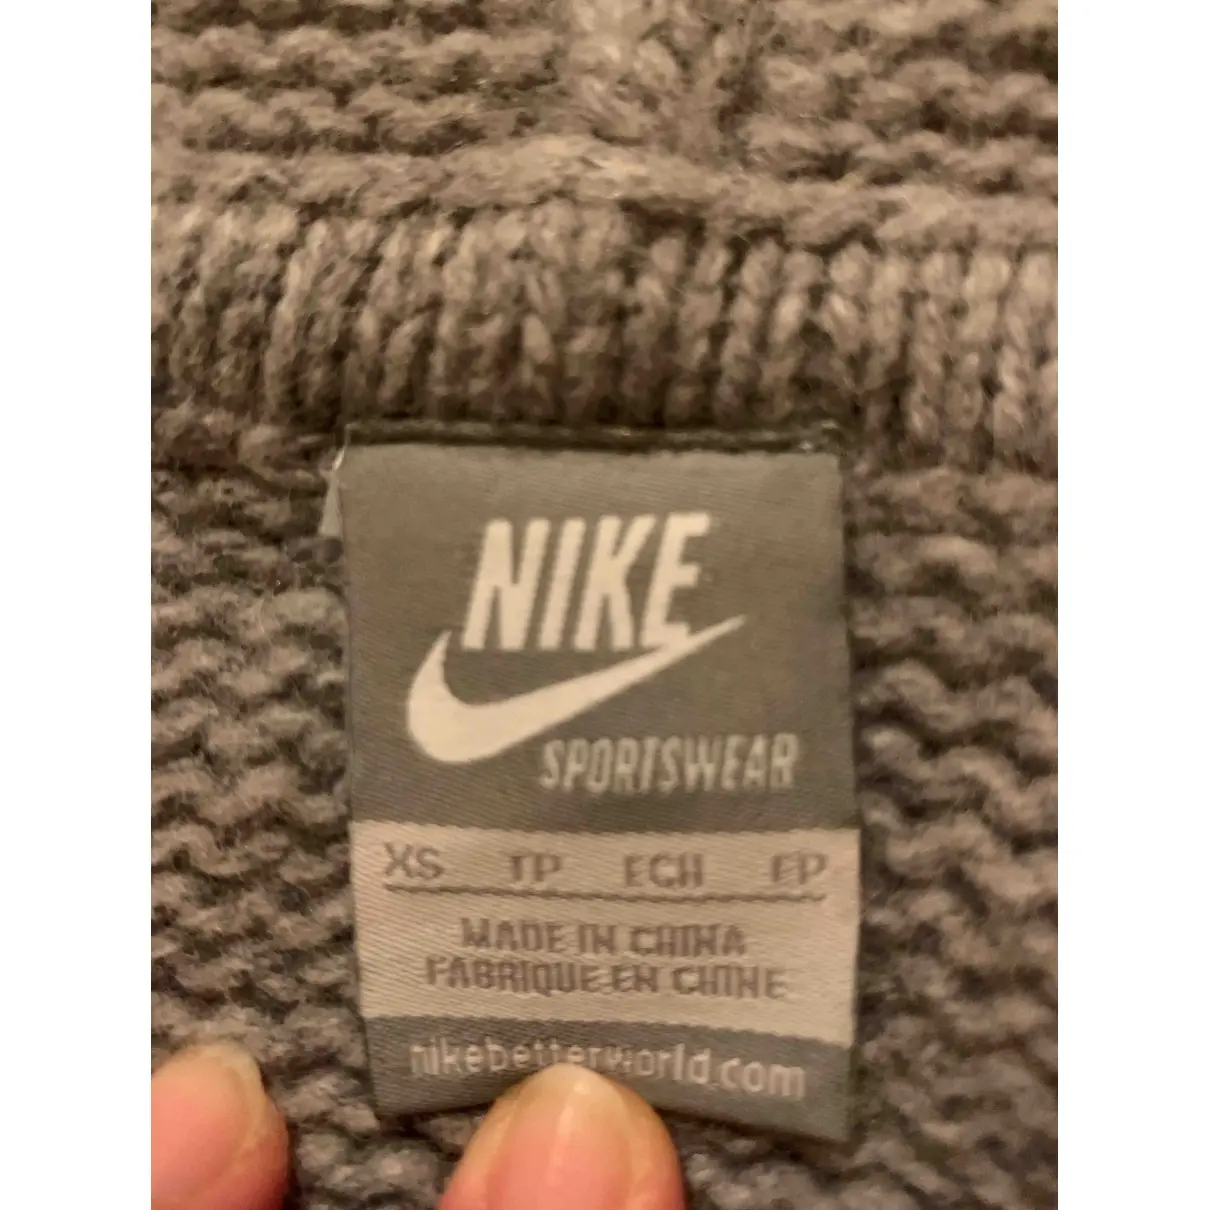 Buy Nike Wool sweatshirt online